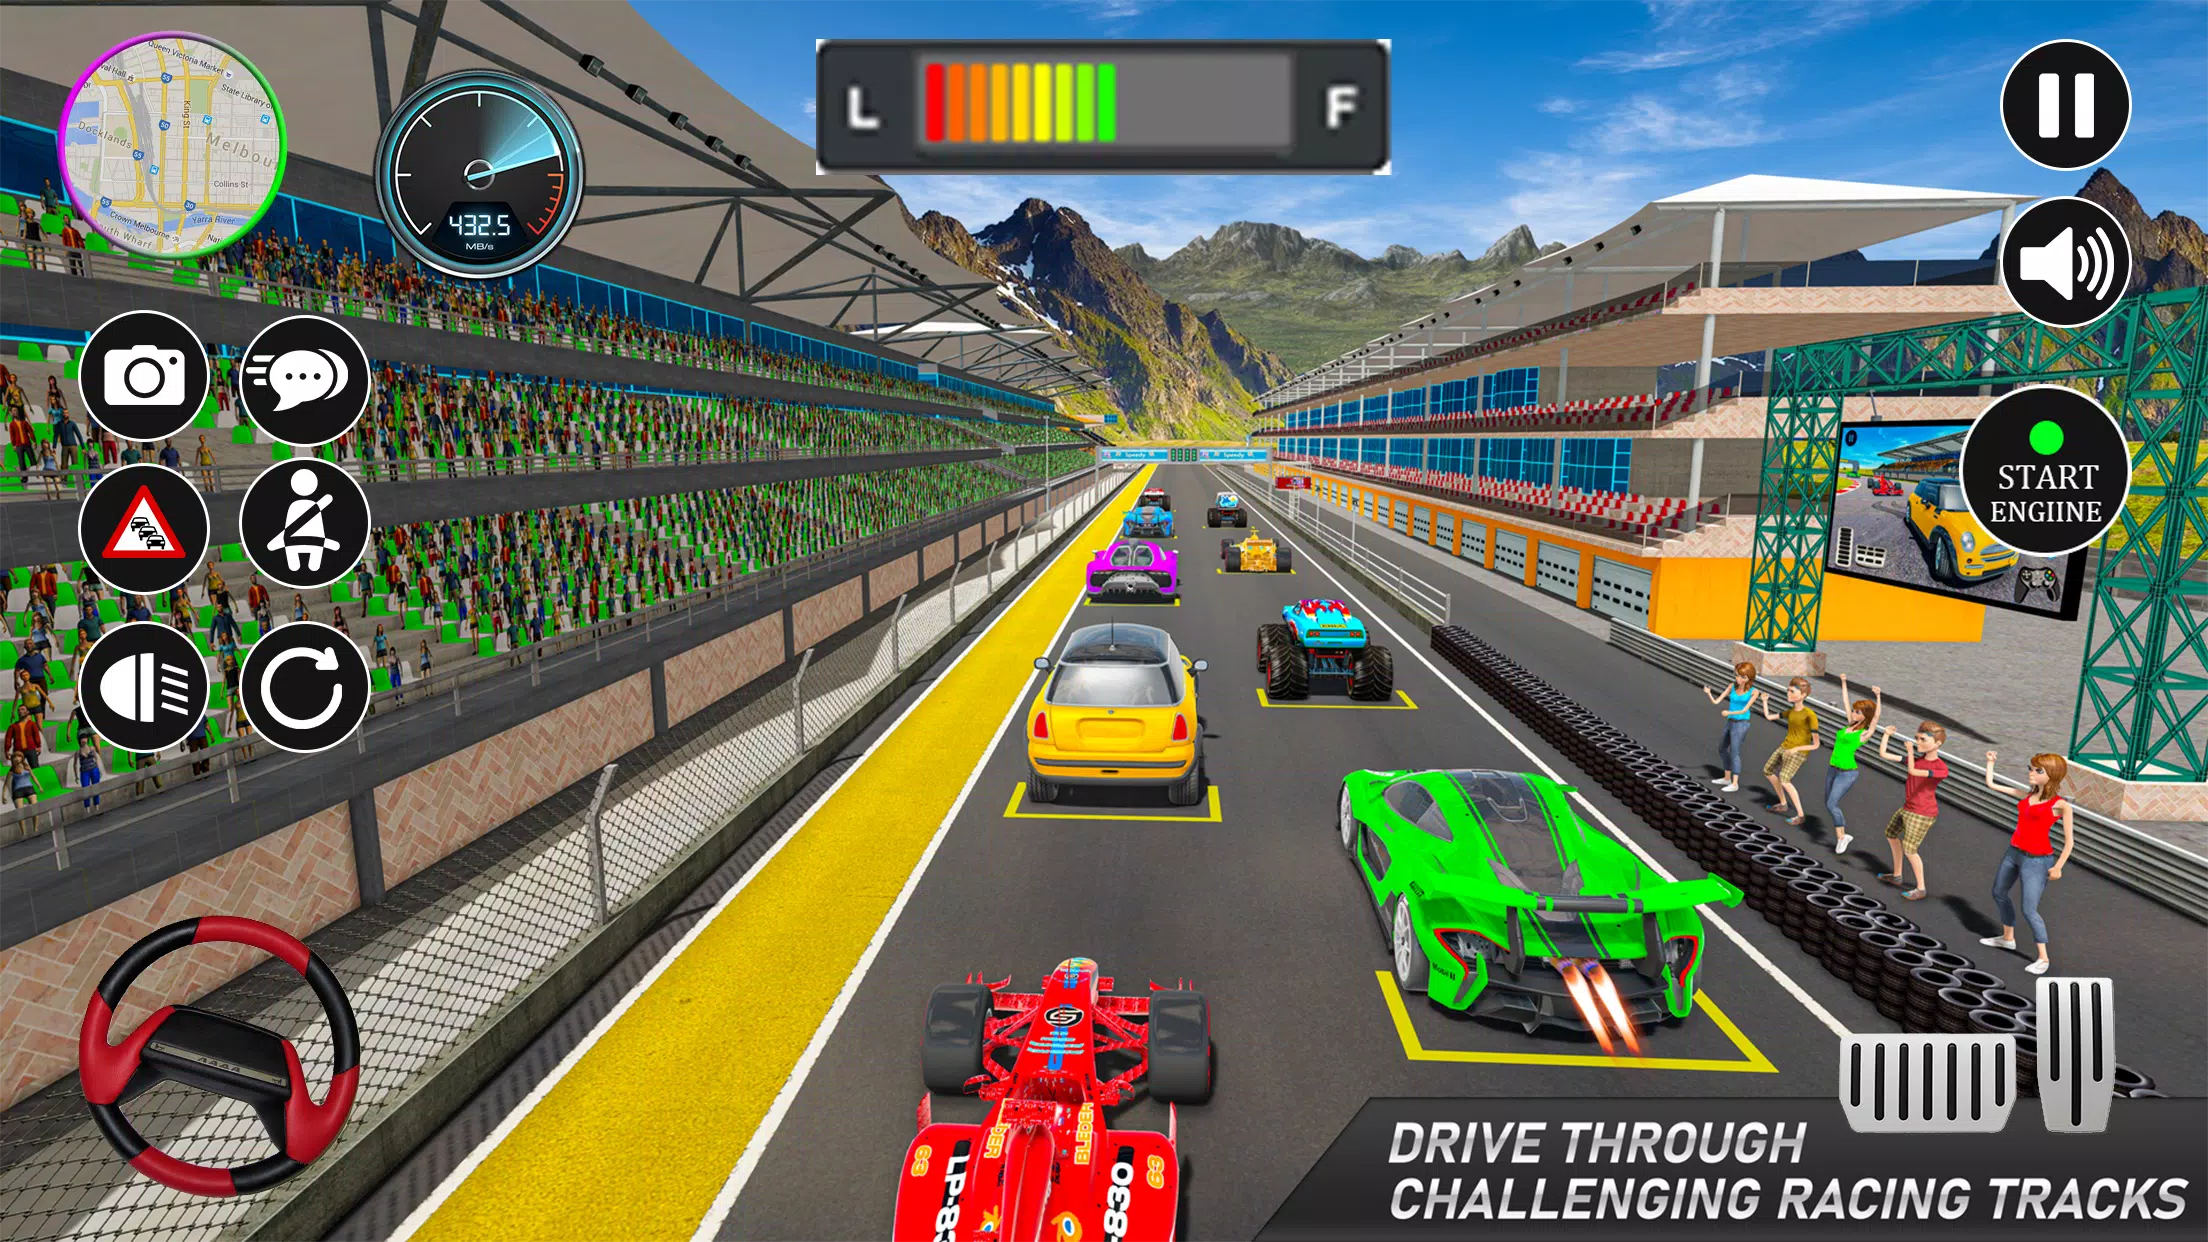 Download do APK de jogo corrida 3d offline para Android